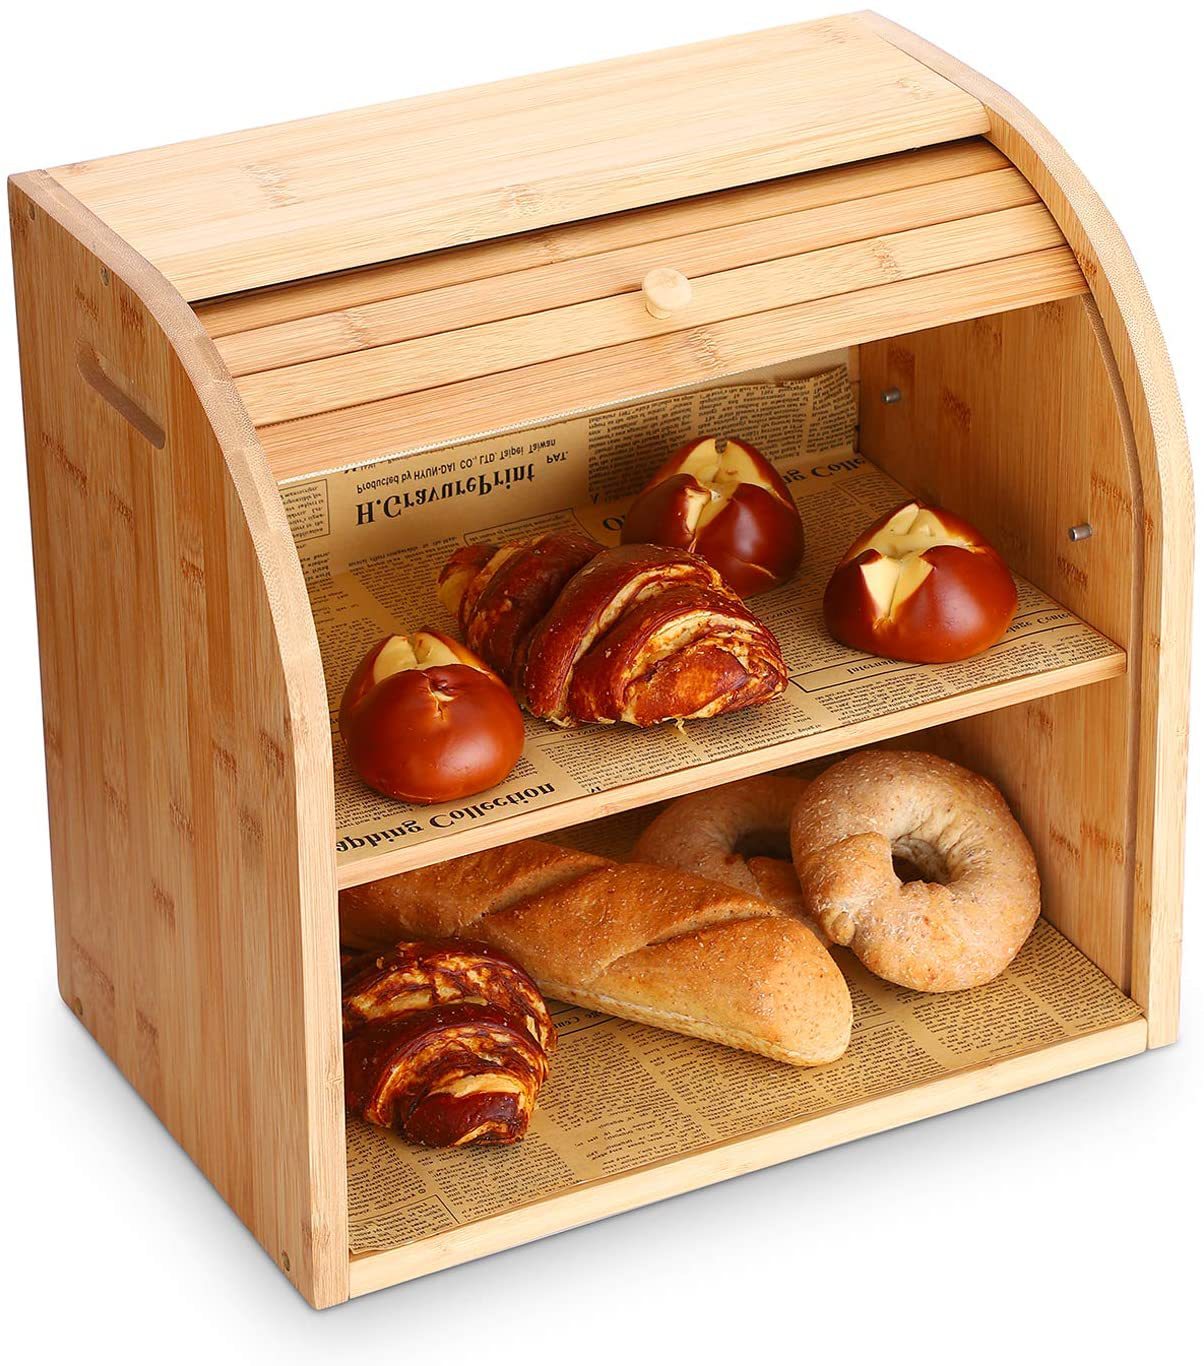 Bamboo Double Layer Bread Box - Elevato Home Default Title Organizer